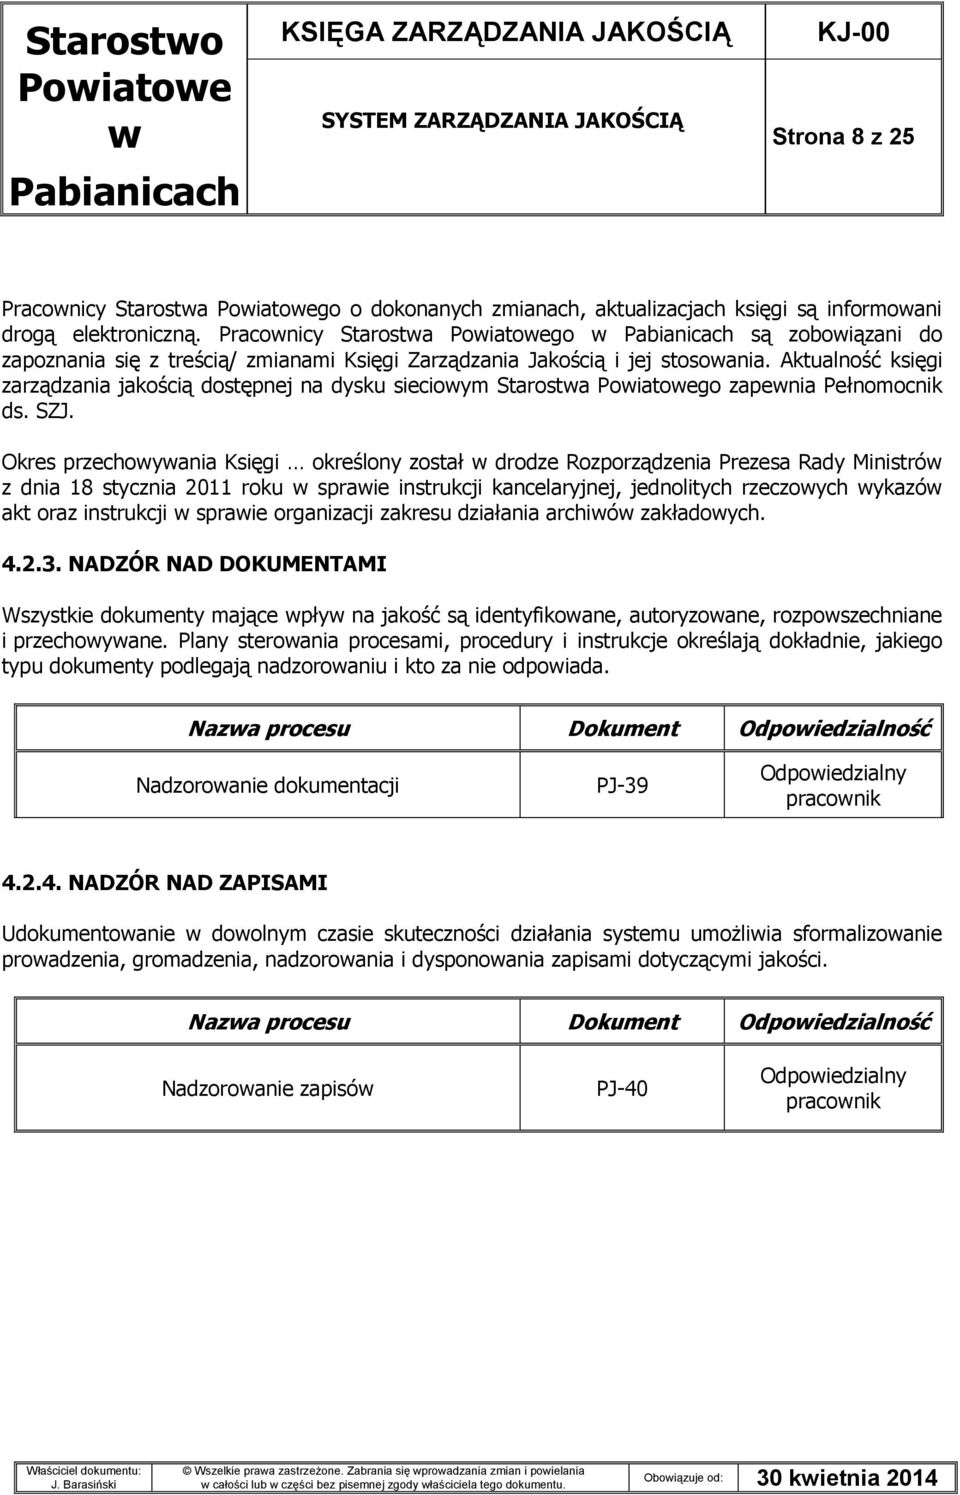 Aktualność księgi zarządzania jakością dostępnej na dysku siecioym Starosta go zapenia Pełnomocnik ds. SZJ.